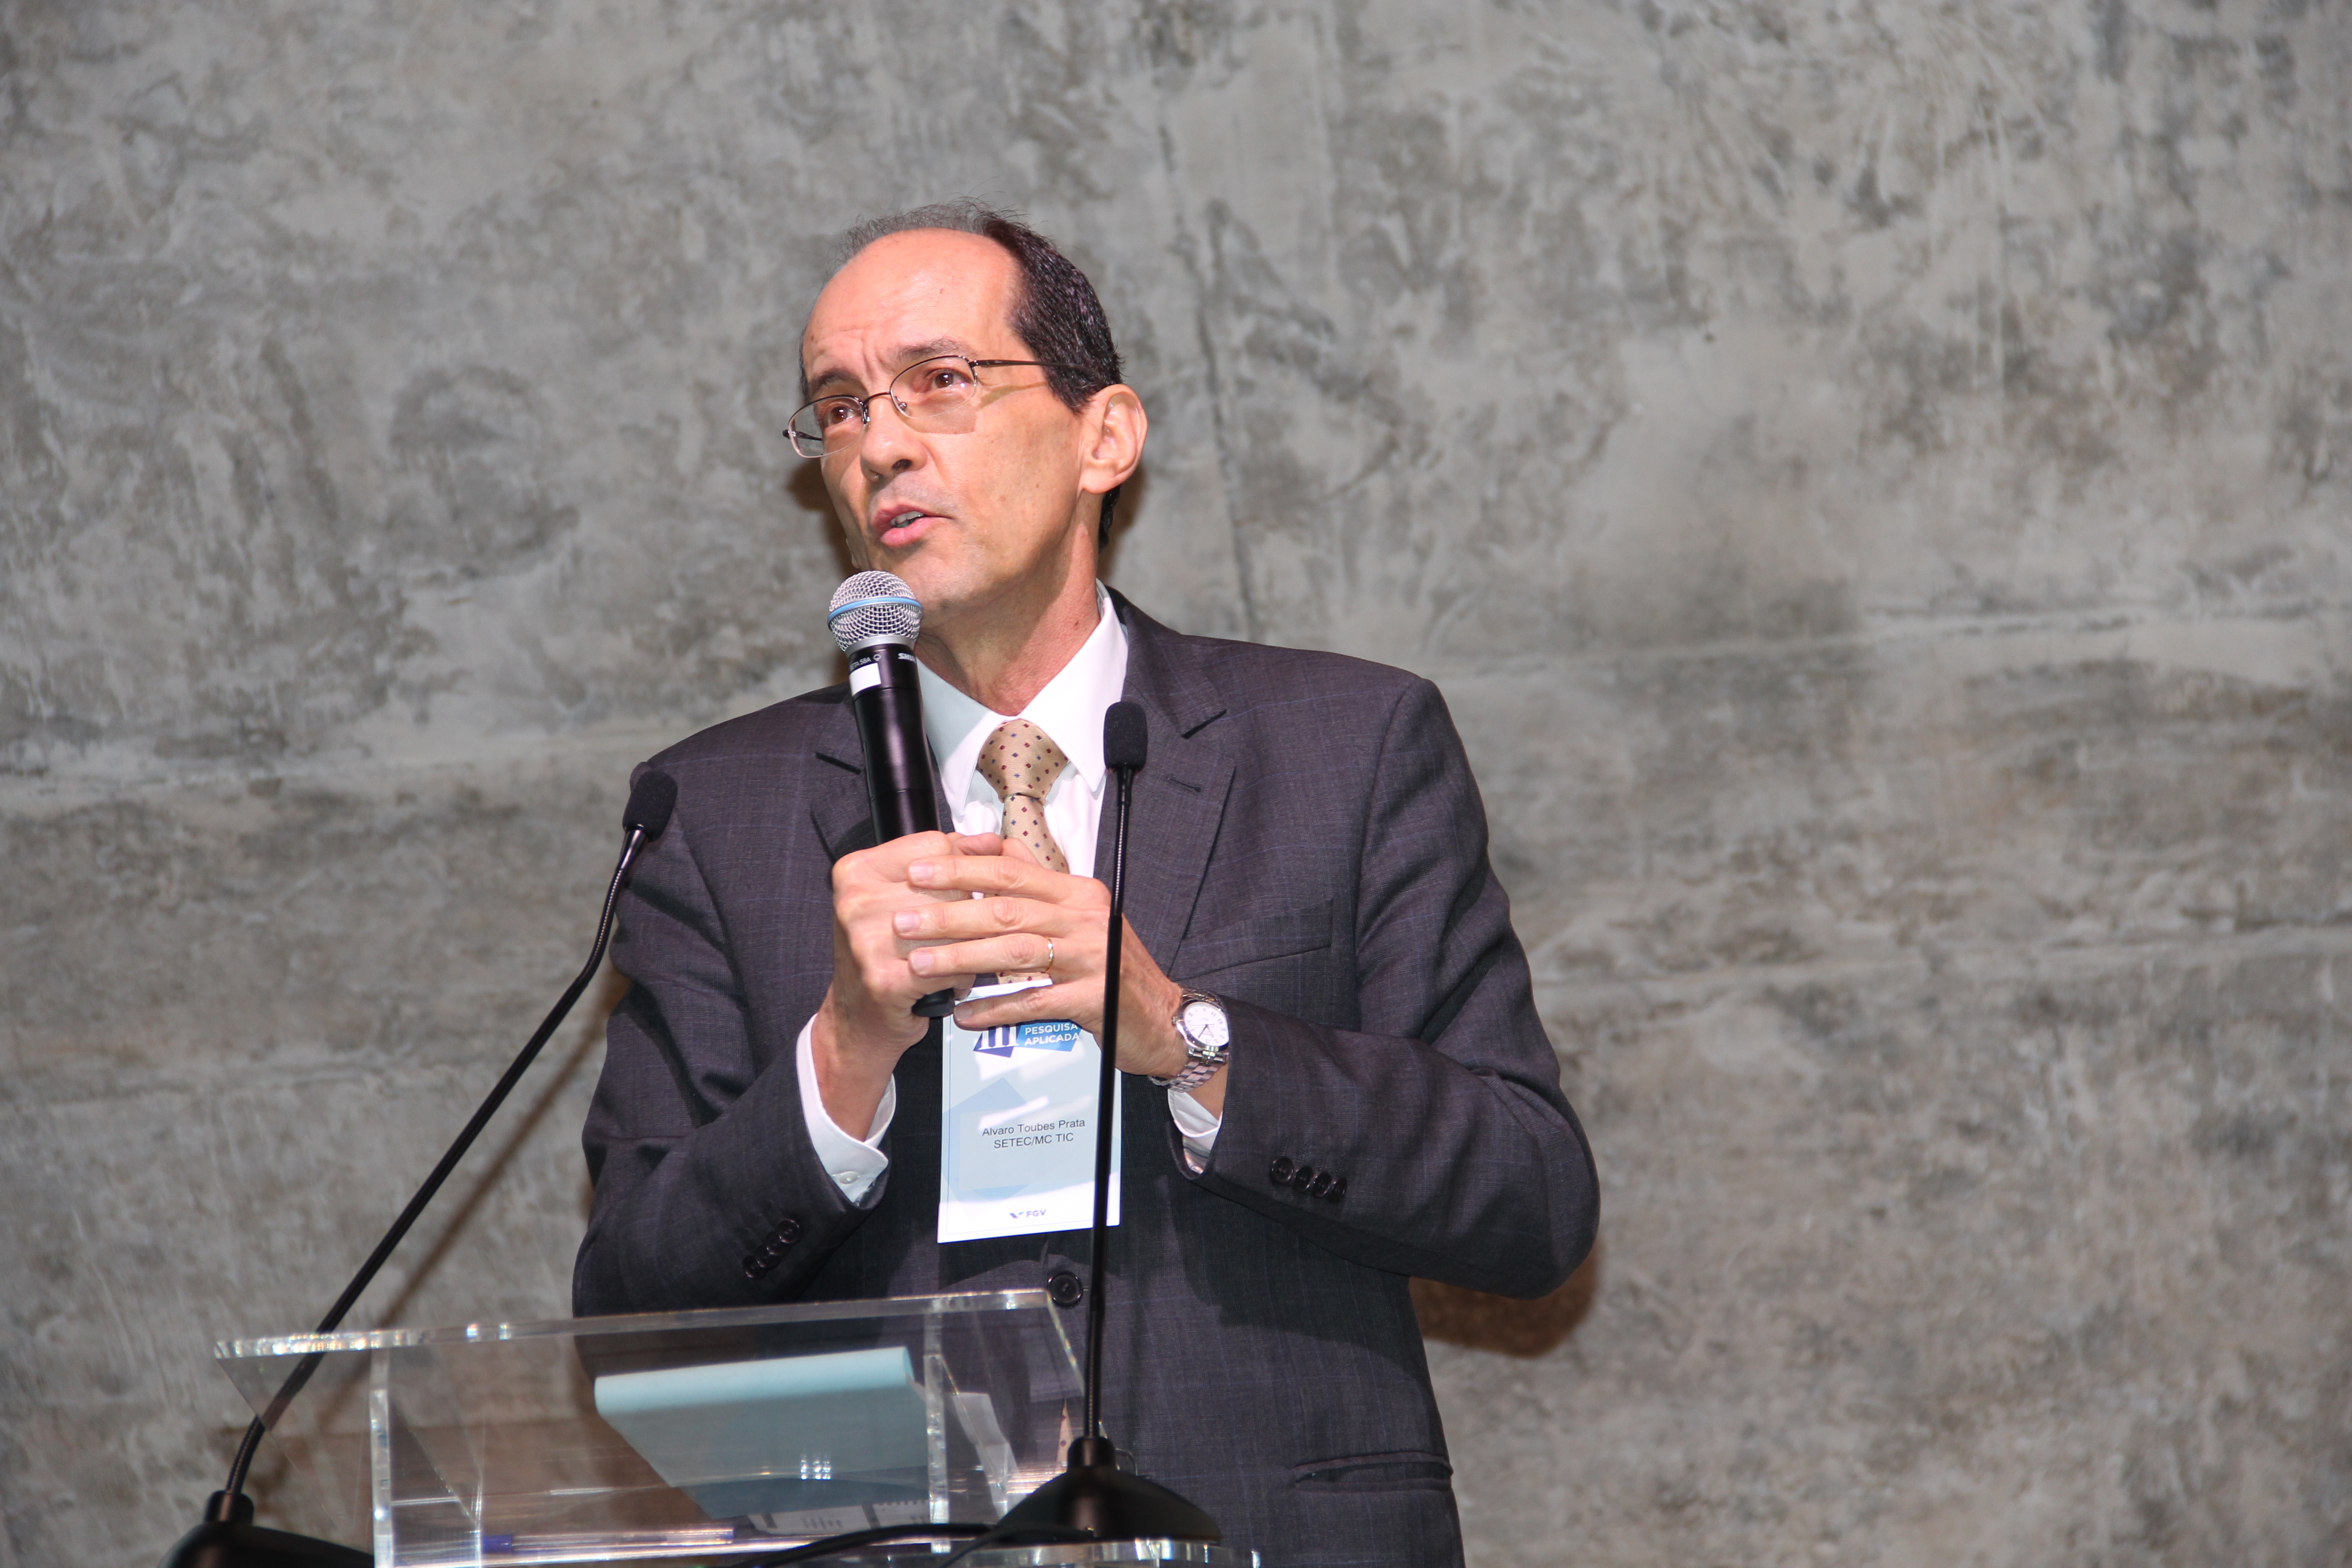 Álvaro Prata, brasilianischer Staatssekretär für Technologische Entwicklung und Innovation